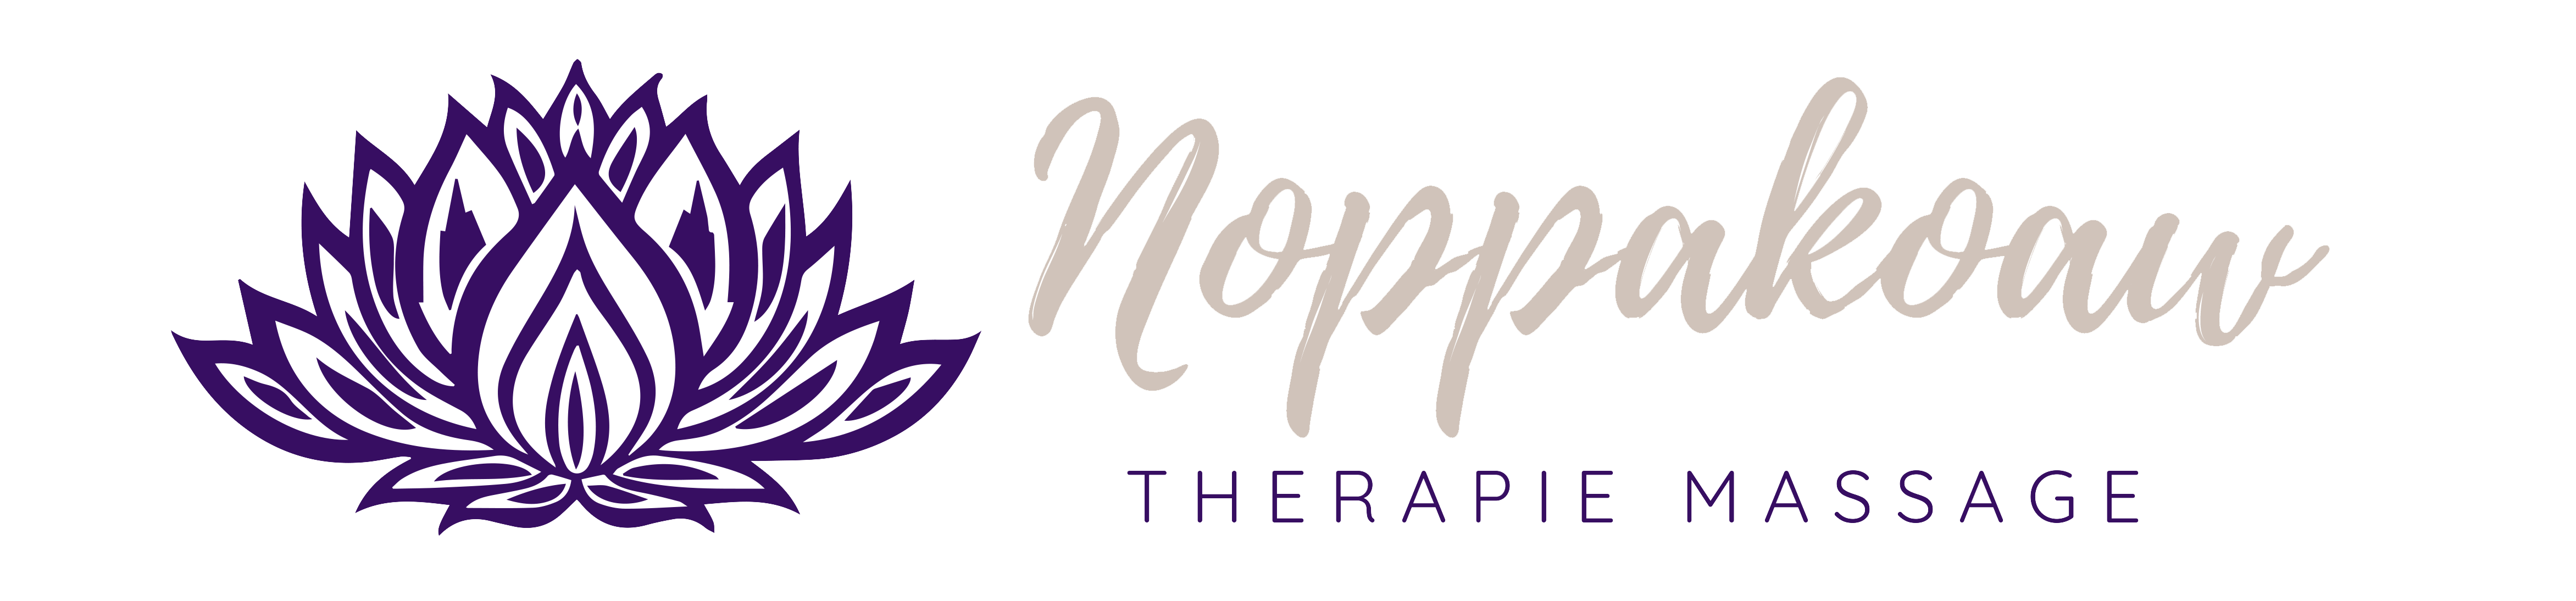 Noppakoaw Therapie Massage